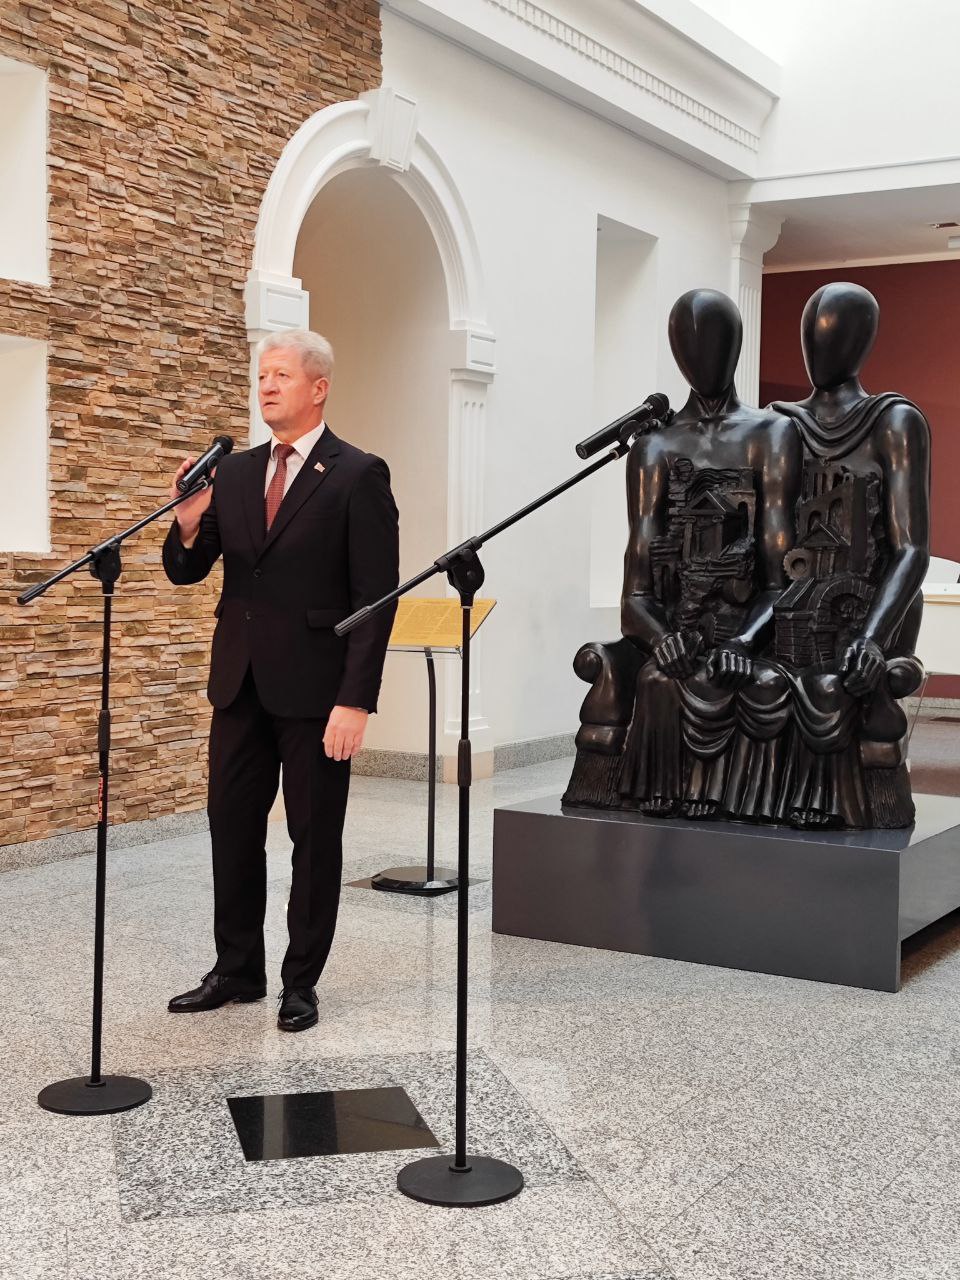 Лукашэнка падарыў Нацыянальнаму мастацкаму музею скульптуру італьянскага мастака Джорджа дэ Кірыка